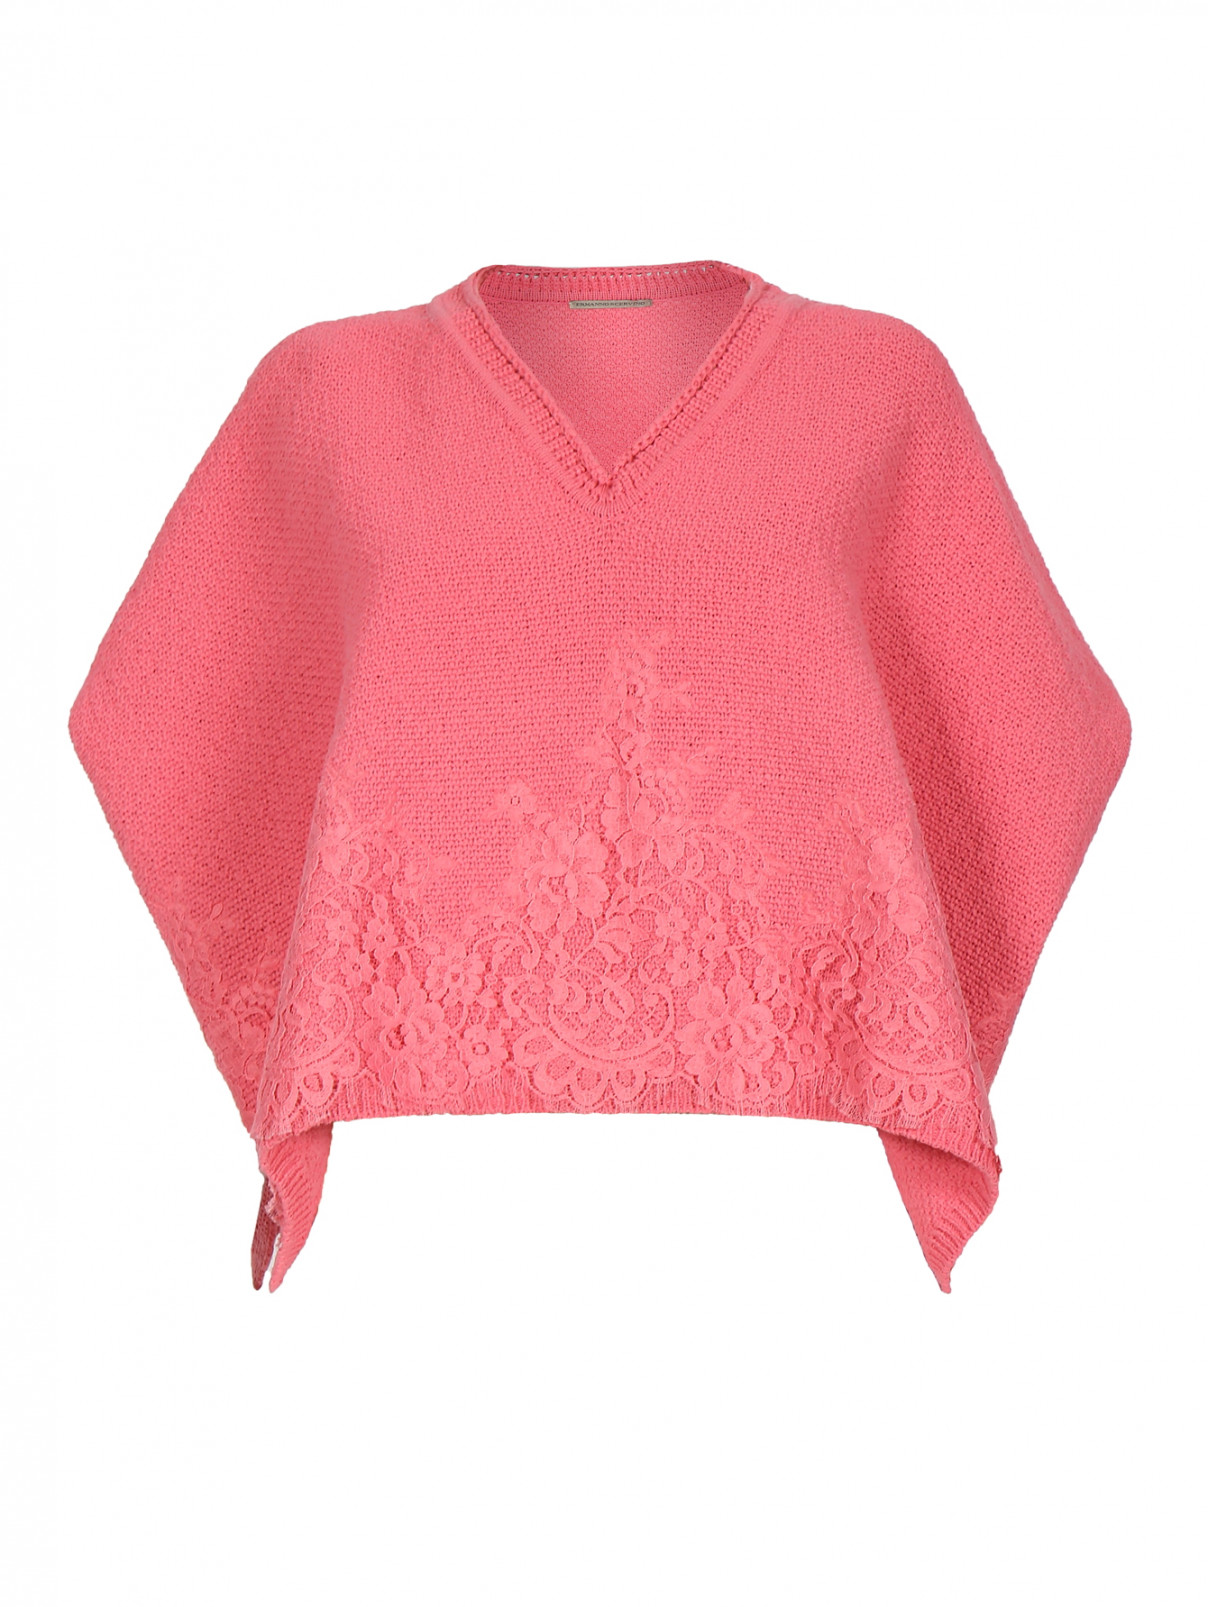 Джемпер-пончо с вышивкой Ermanno Scervino  –  Общий вид  – Цвет:  Розовый